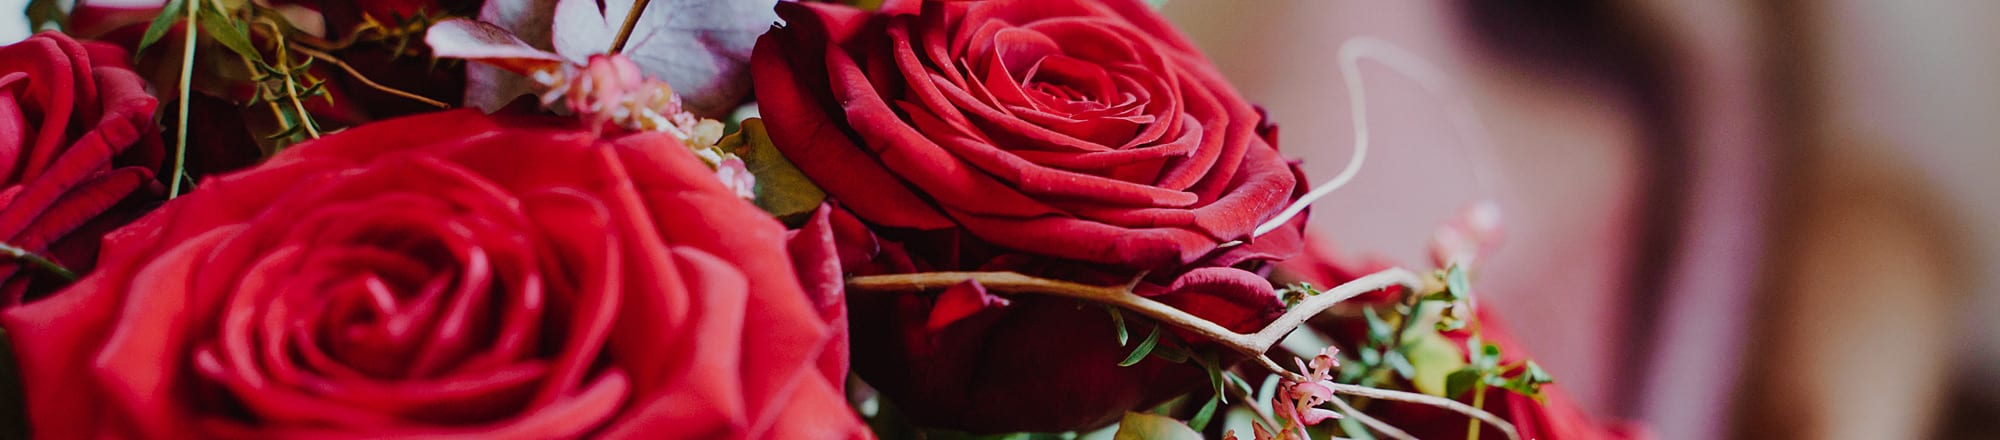 12. Juni: Weltweiter Tag der roten Rose